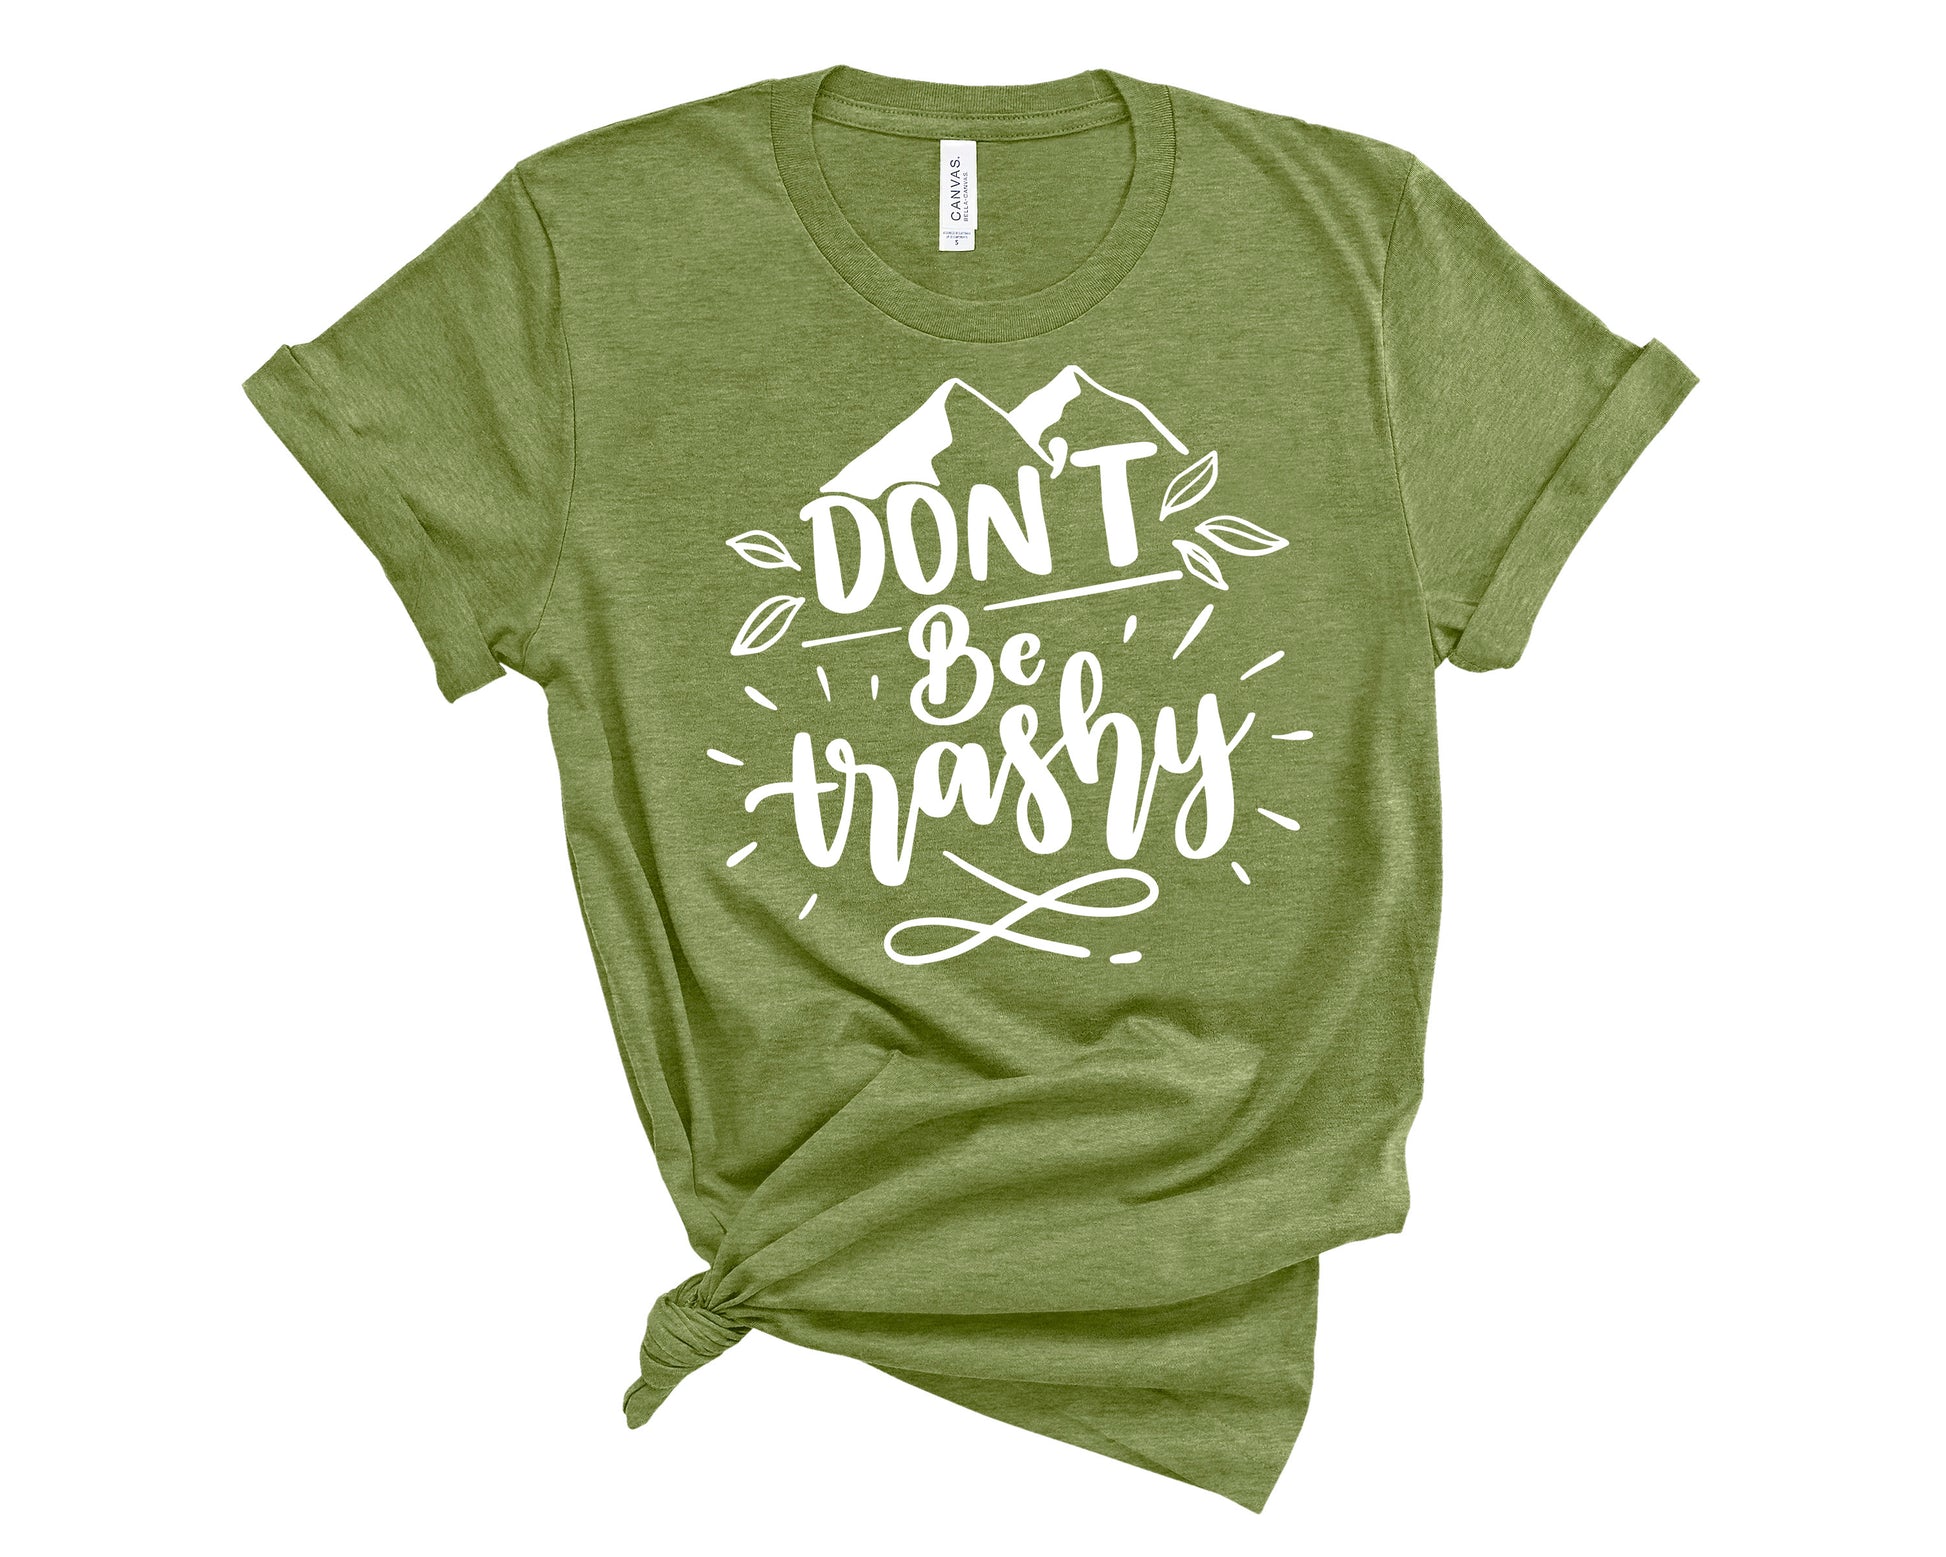 Don't Be Trashy shirt